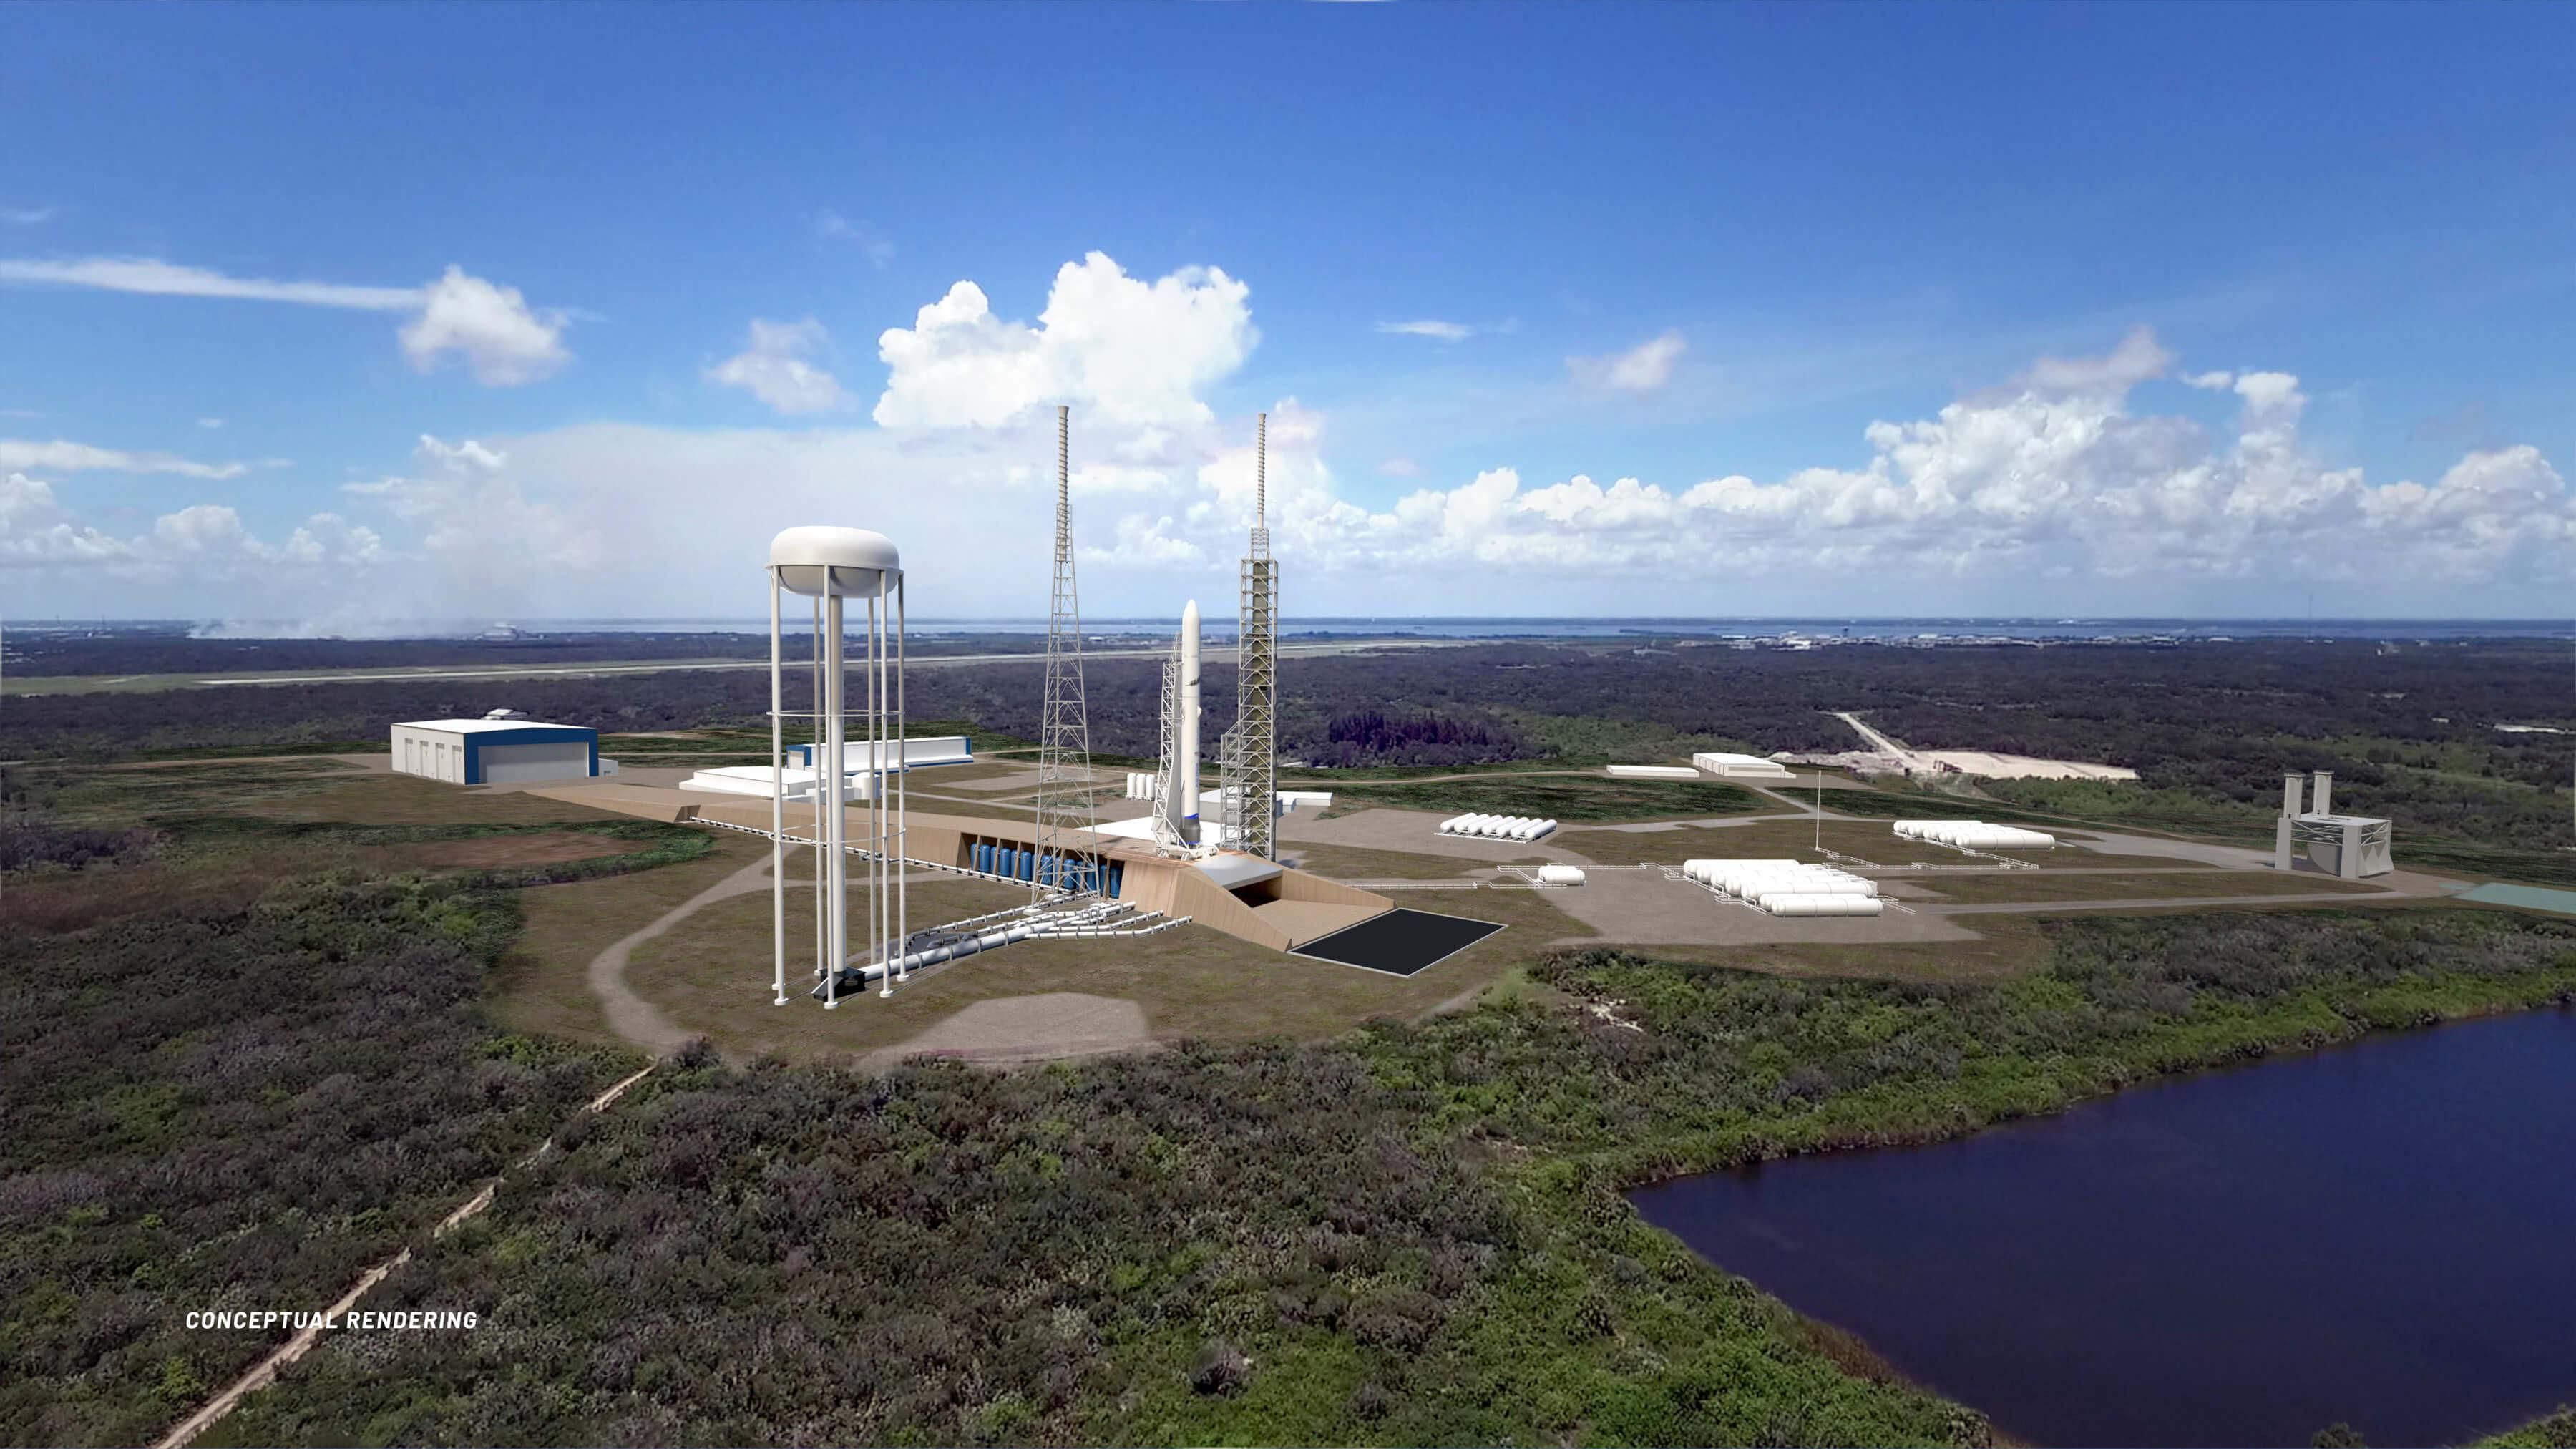 Відеоекскурсія заводом, де створюють ракети New Glenn для Blue Origin